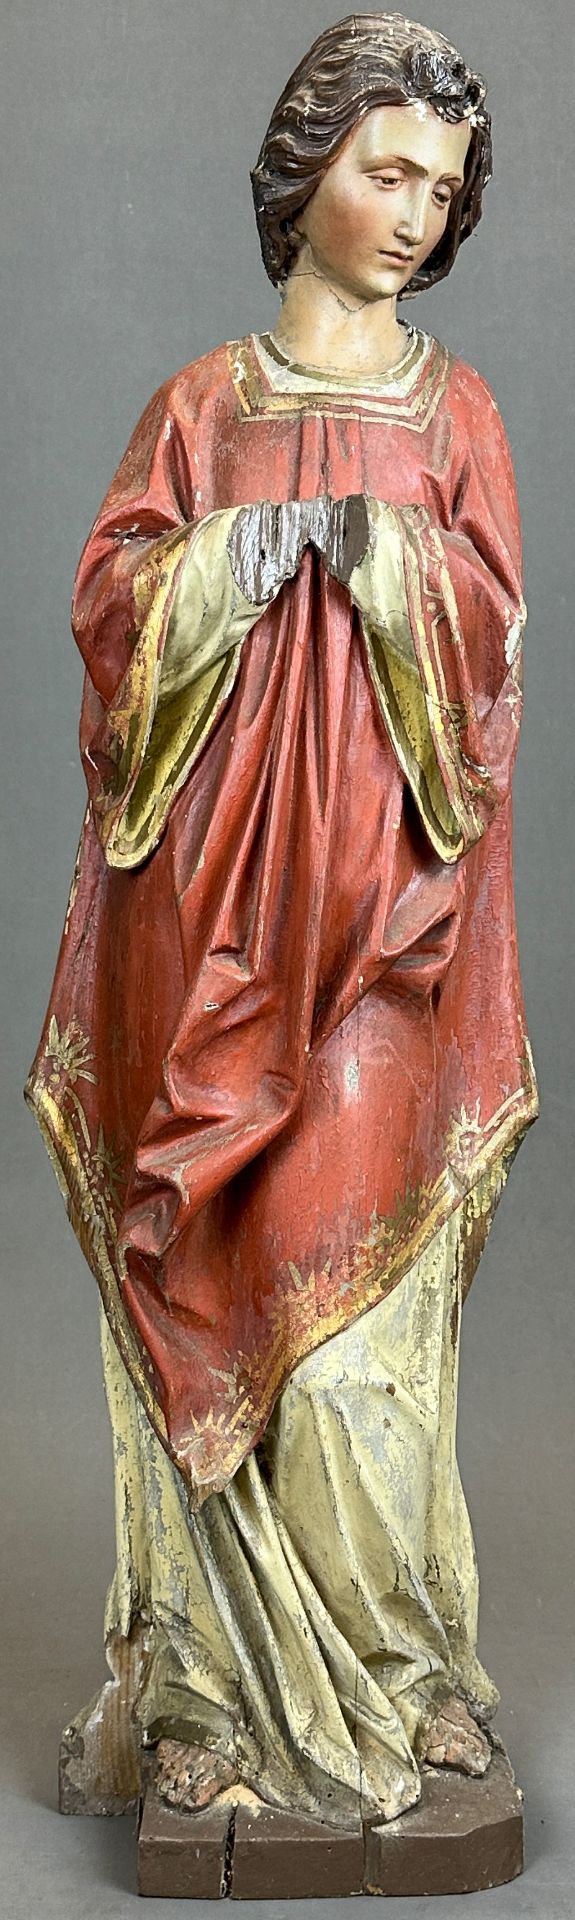 Holzfigur. Hl. Nepomuk. 1. Hälfte 19. Jahrhundert. Deutschland.